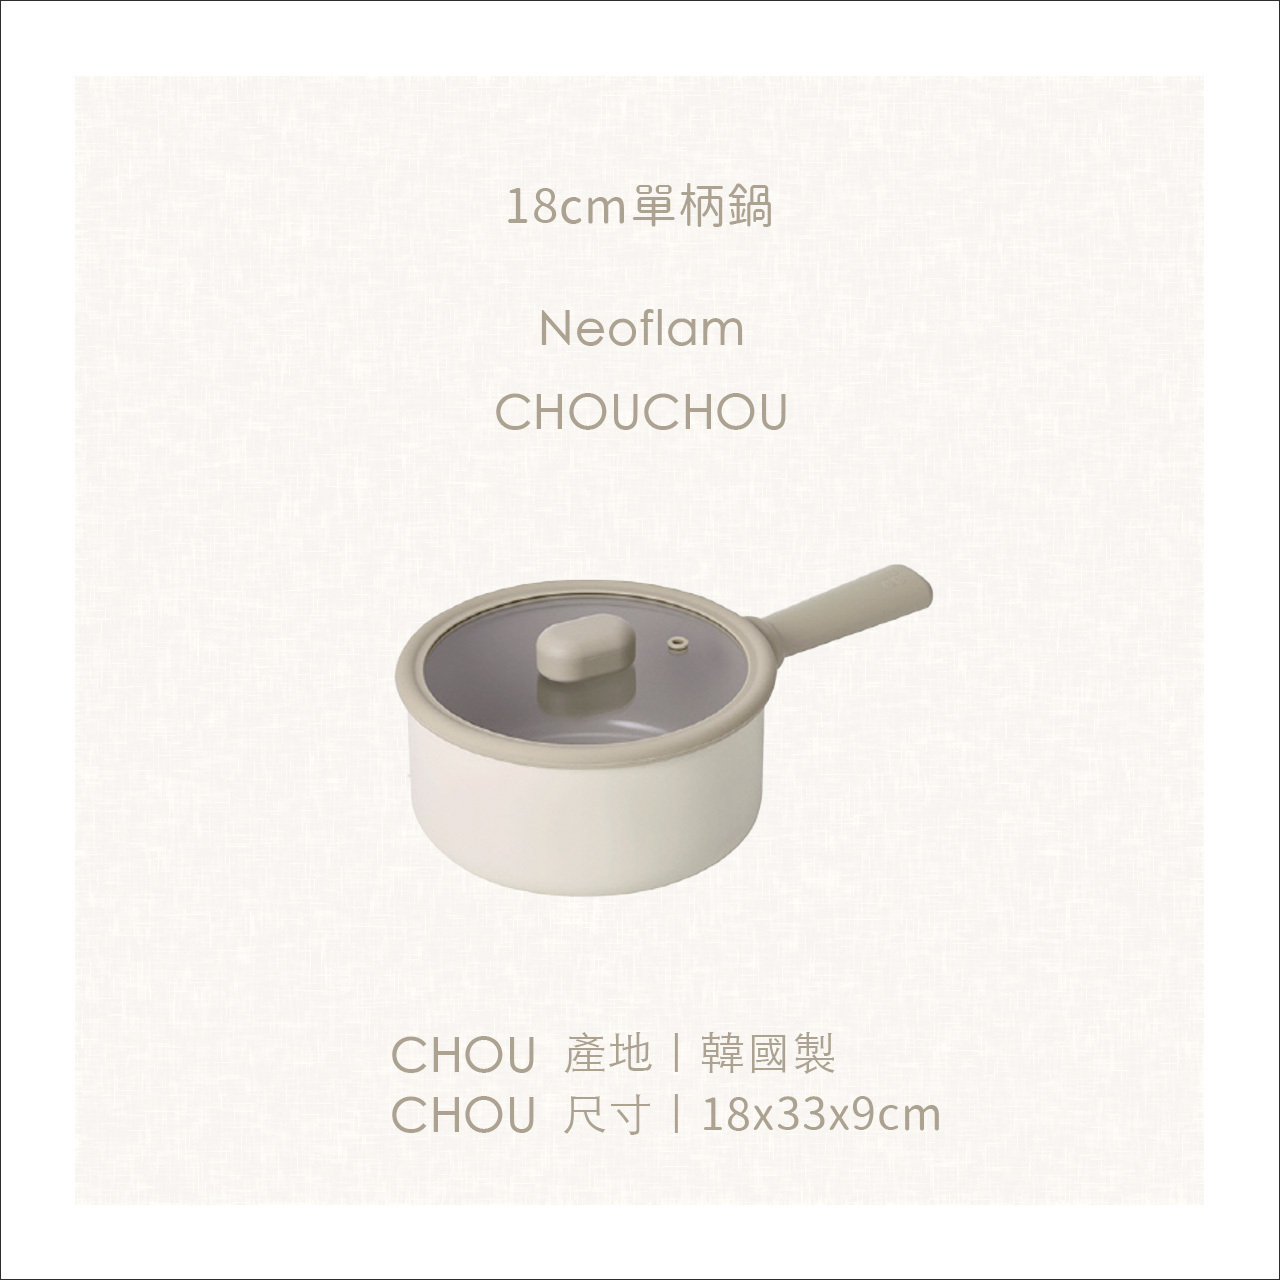 chouchou尺寸-18cm單